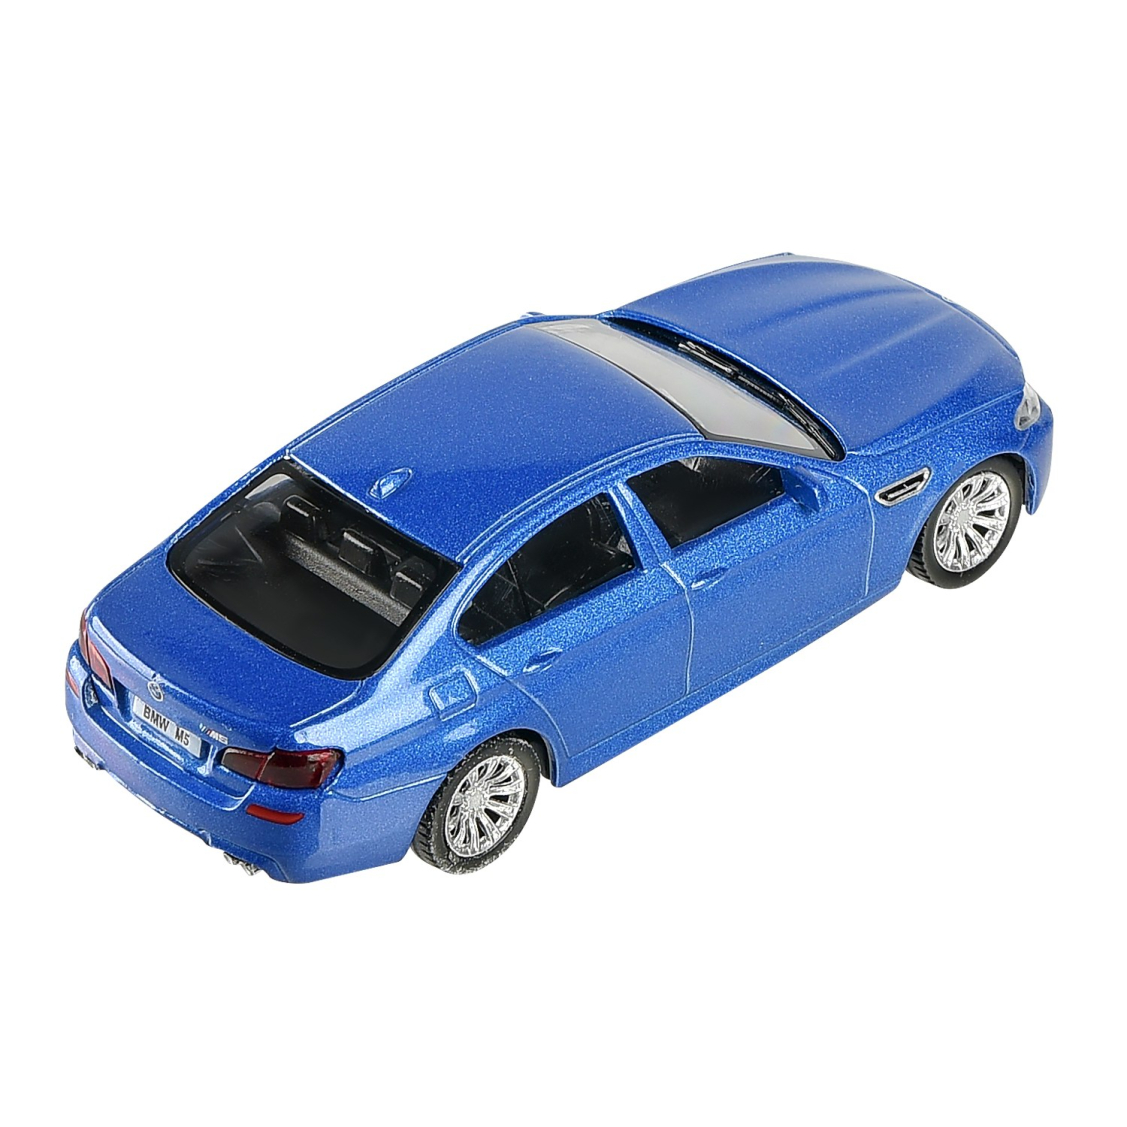 Машинка металлическая Uni-Fortune RMZ City 1:43 BMW M5 без механизмов, 2 цвета (синий/белый), 10,10х3,83х3,01 см